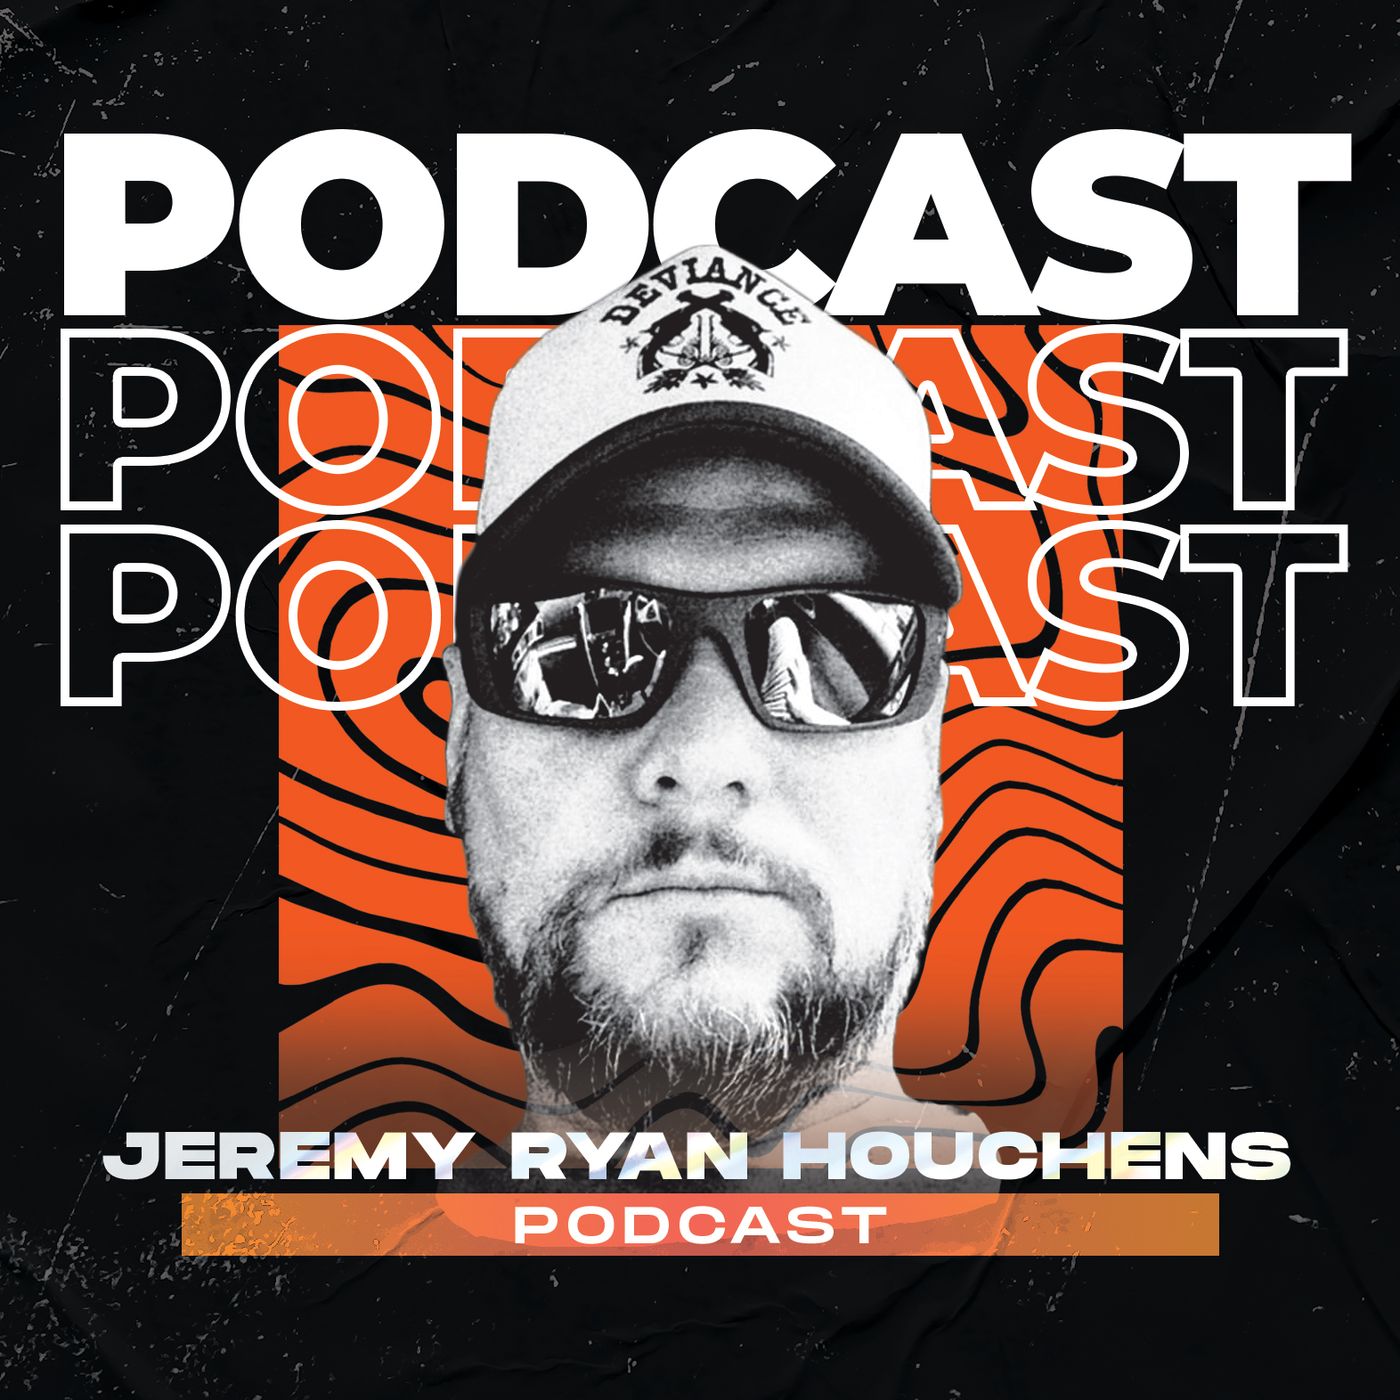 Jeremy Ryan Houchens Podcast